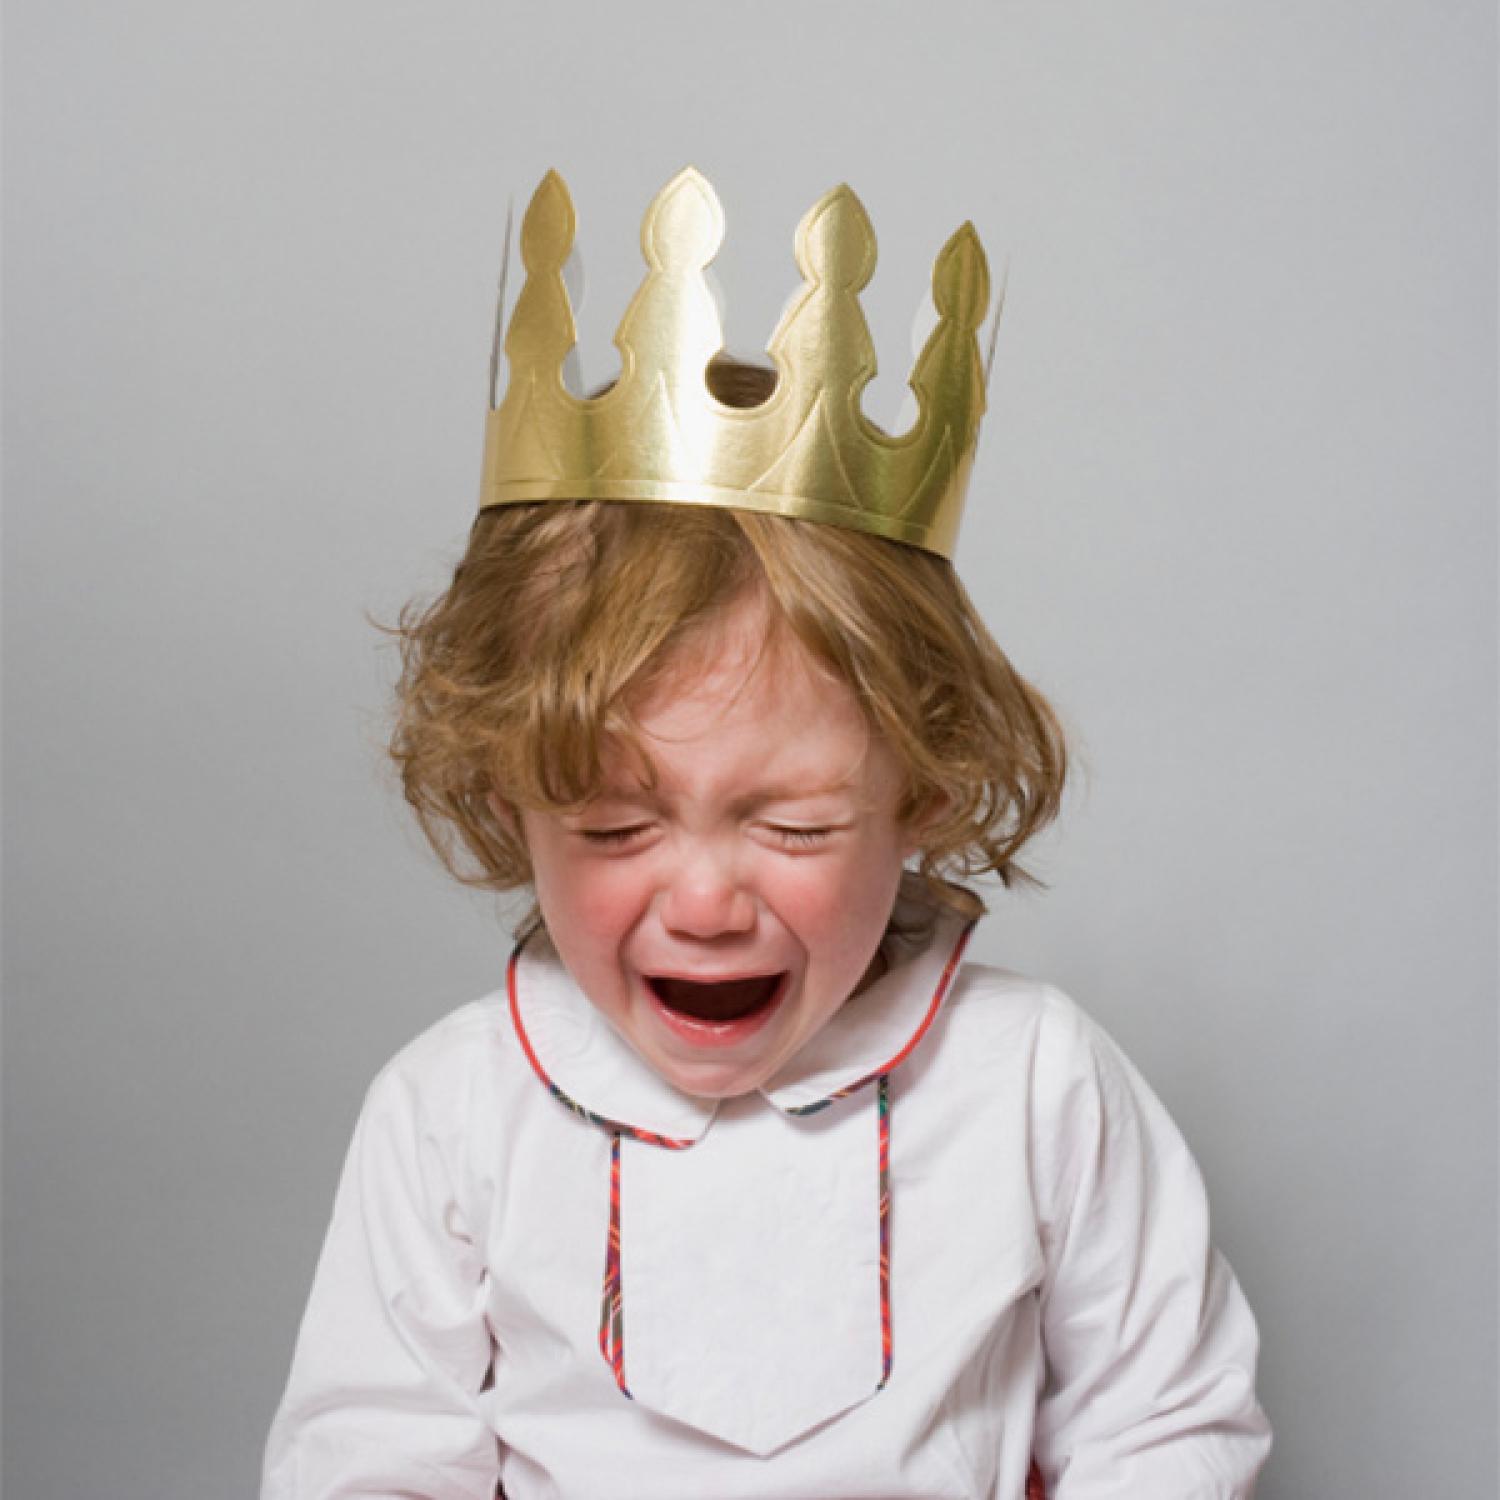 Childhood temper tantrum essay